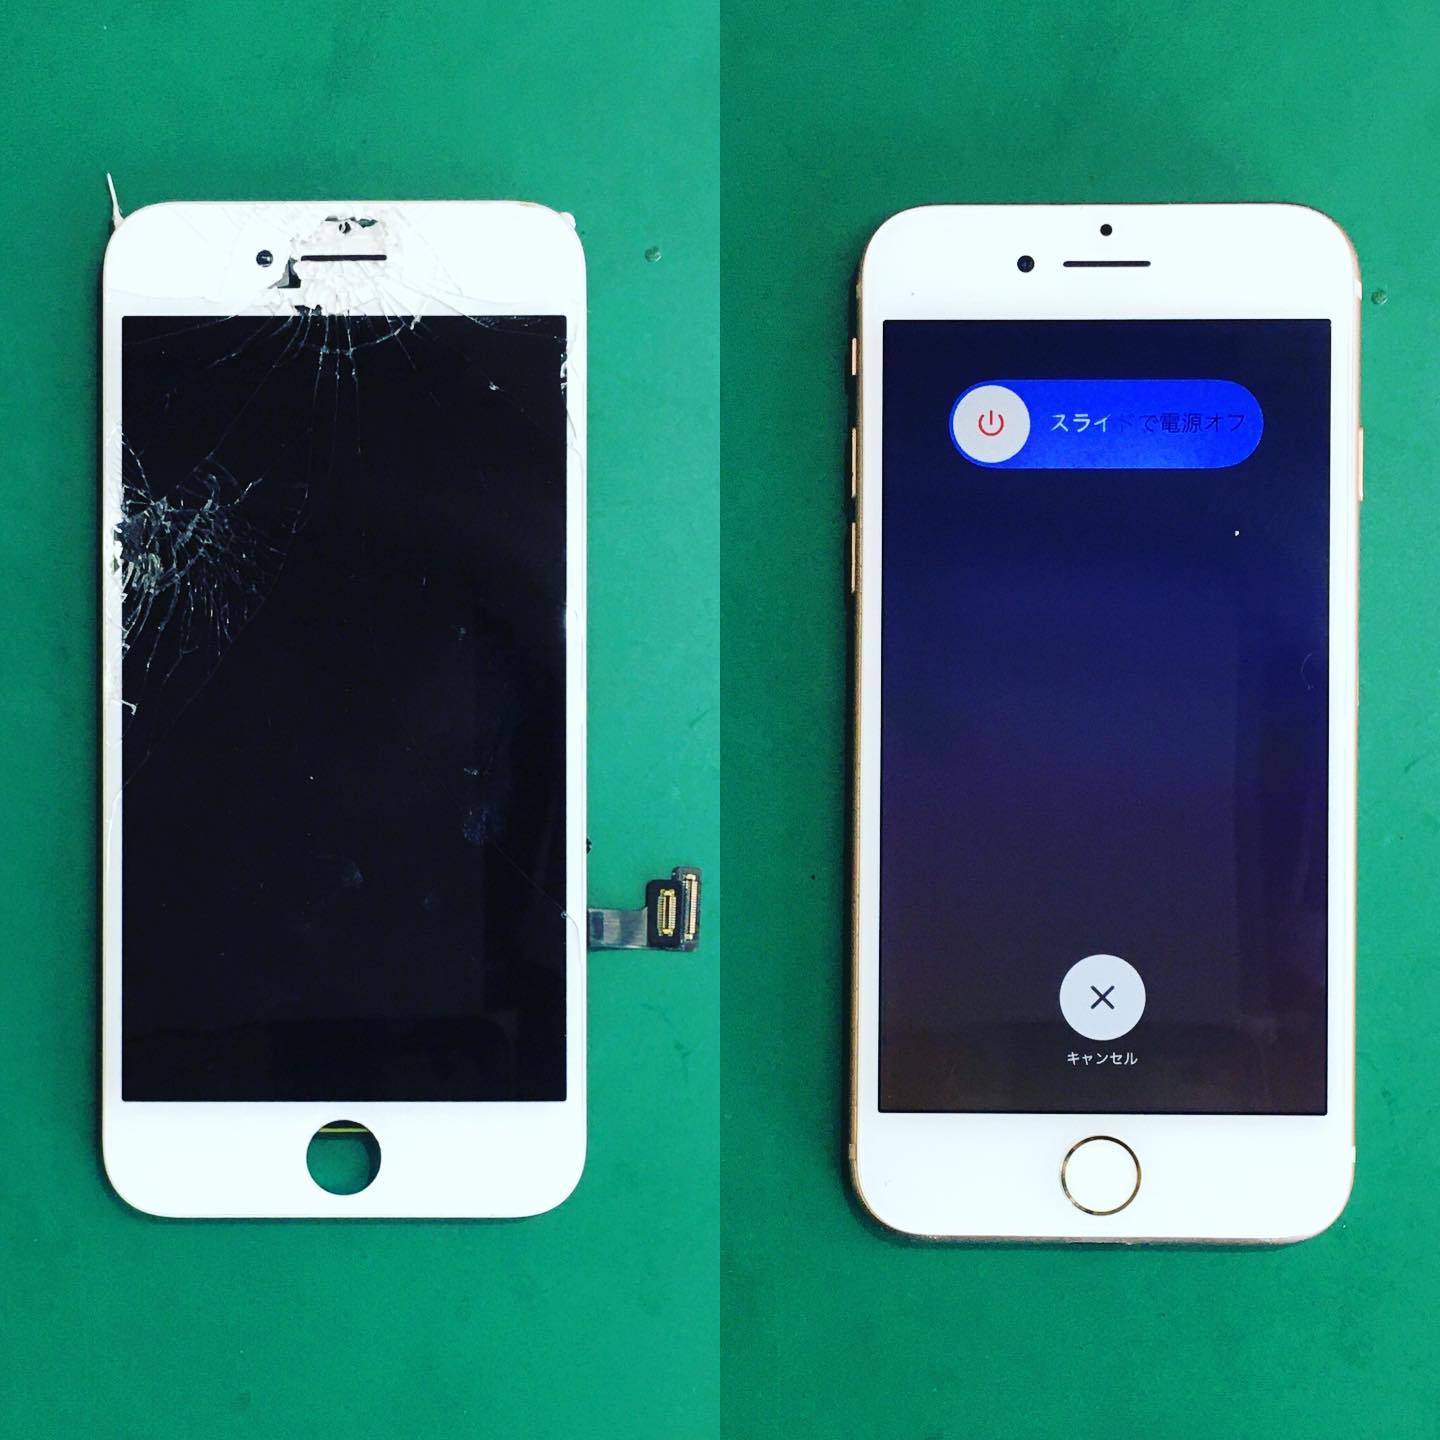 知多市のM様がiPhone8の液晶修理でご来店📲

画面上部から真ん中にかけて酷く割れていて、画面が映らなくなっていましたが、データはそのまま新品同様に30分程で直りました🥰

お問い合わせ▶️0120-14-3956

#名古屋市 #栄 #大須 #iPhone修理 #液晶修理 #iPhone8